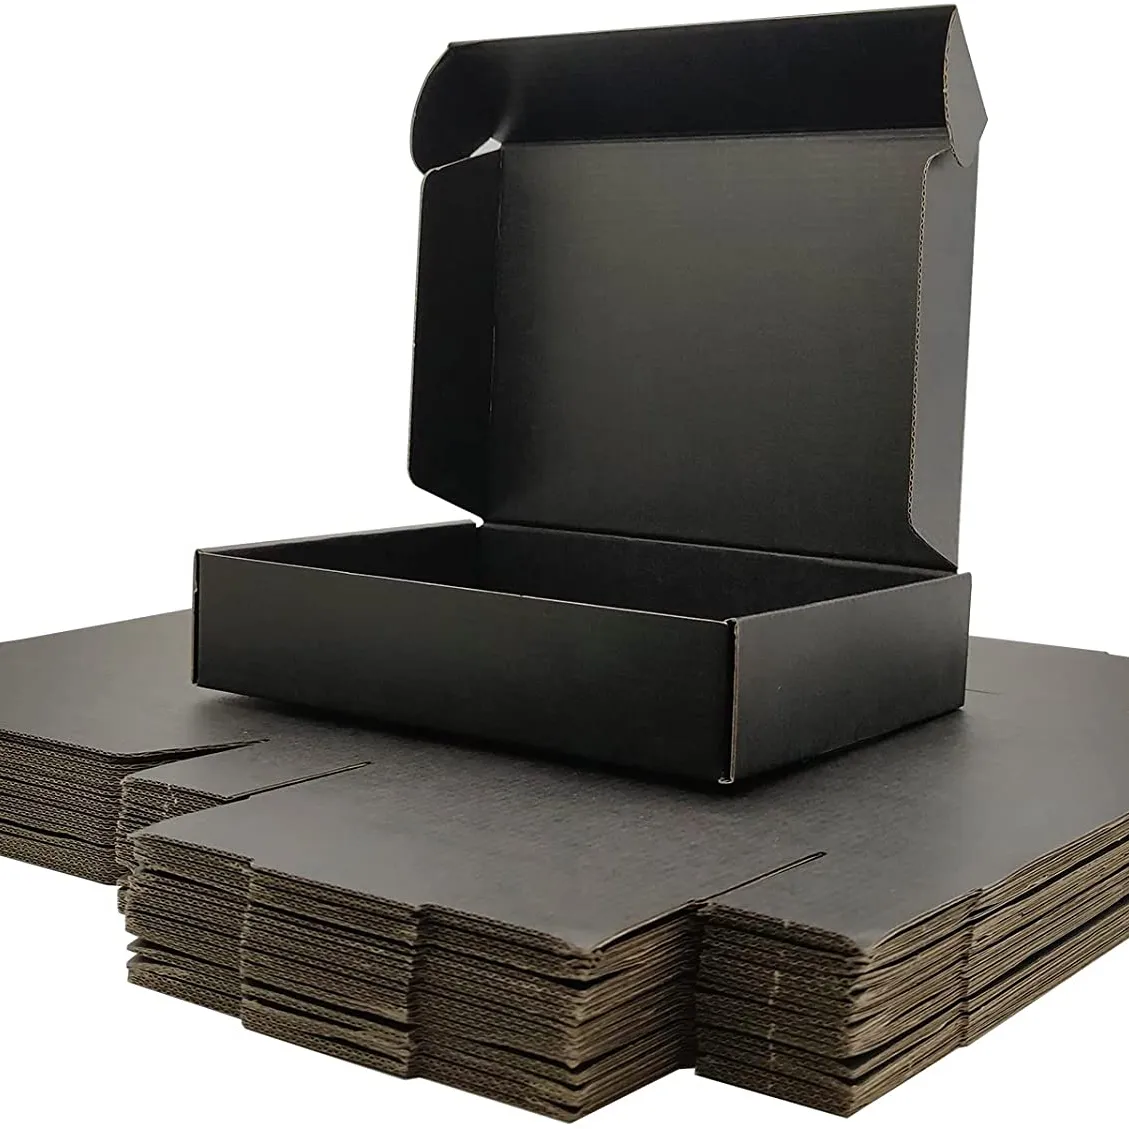 Oem odm individuell bedruckte tuch schuhe paket lieferung karton box hohe qualität luxus wellpappe schwarz versand mailer boxen